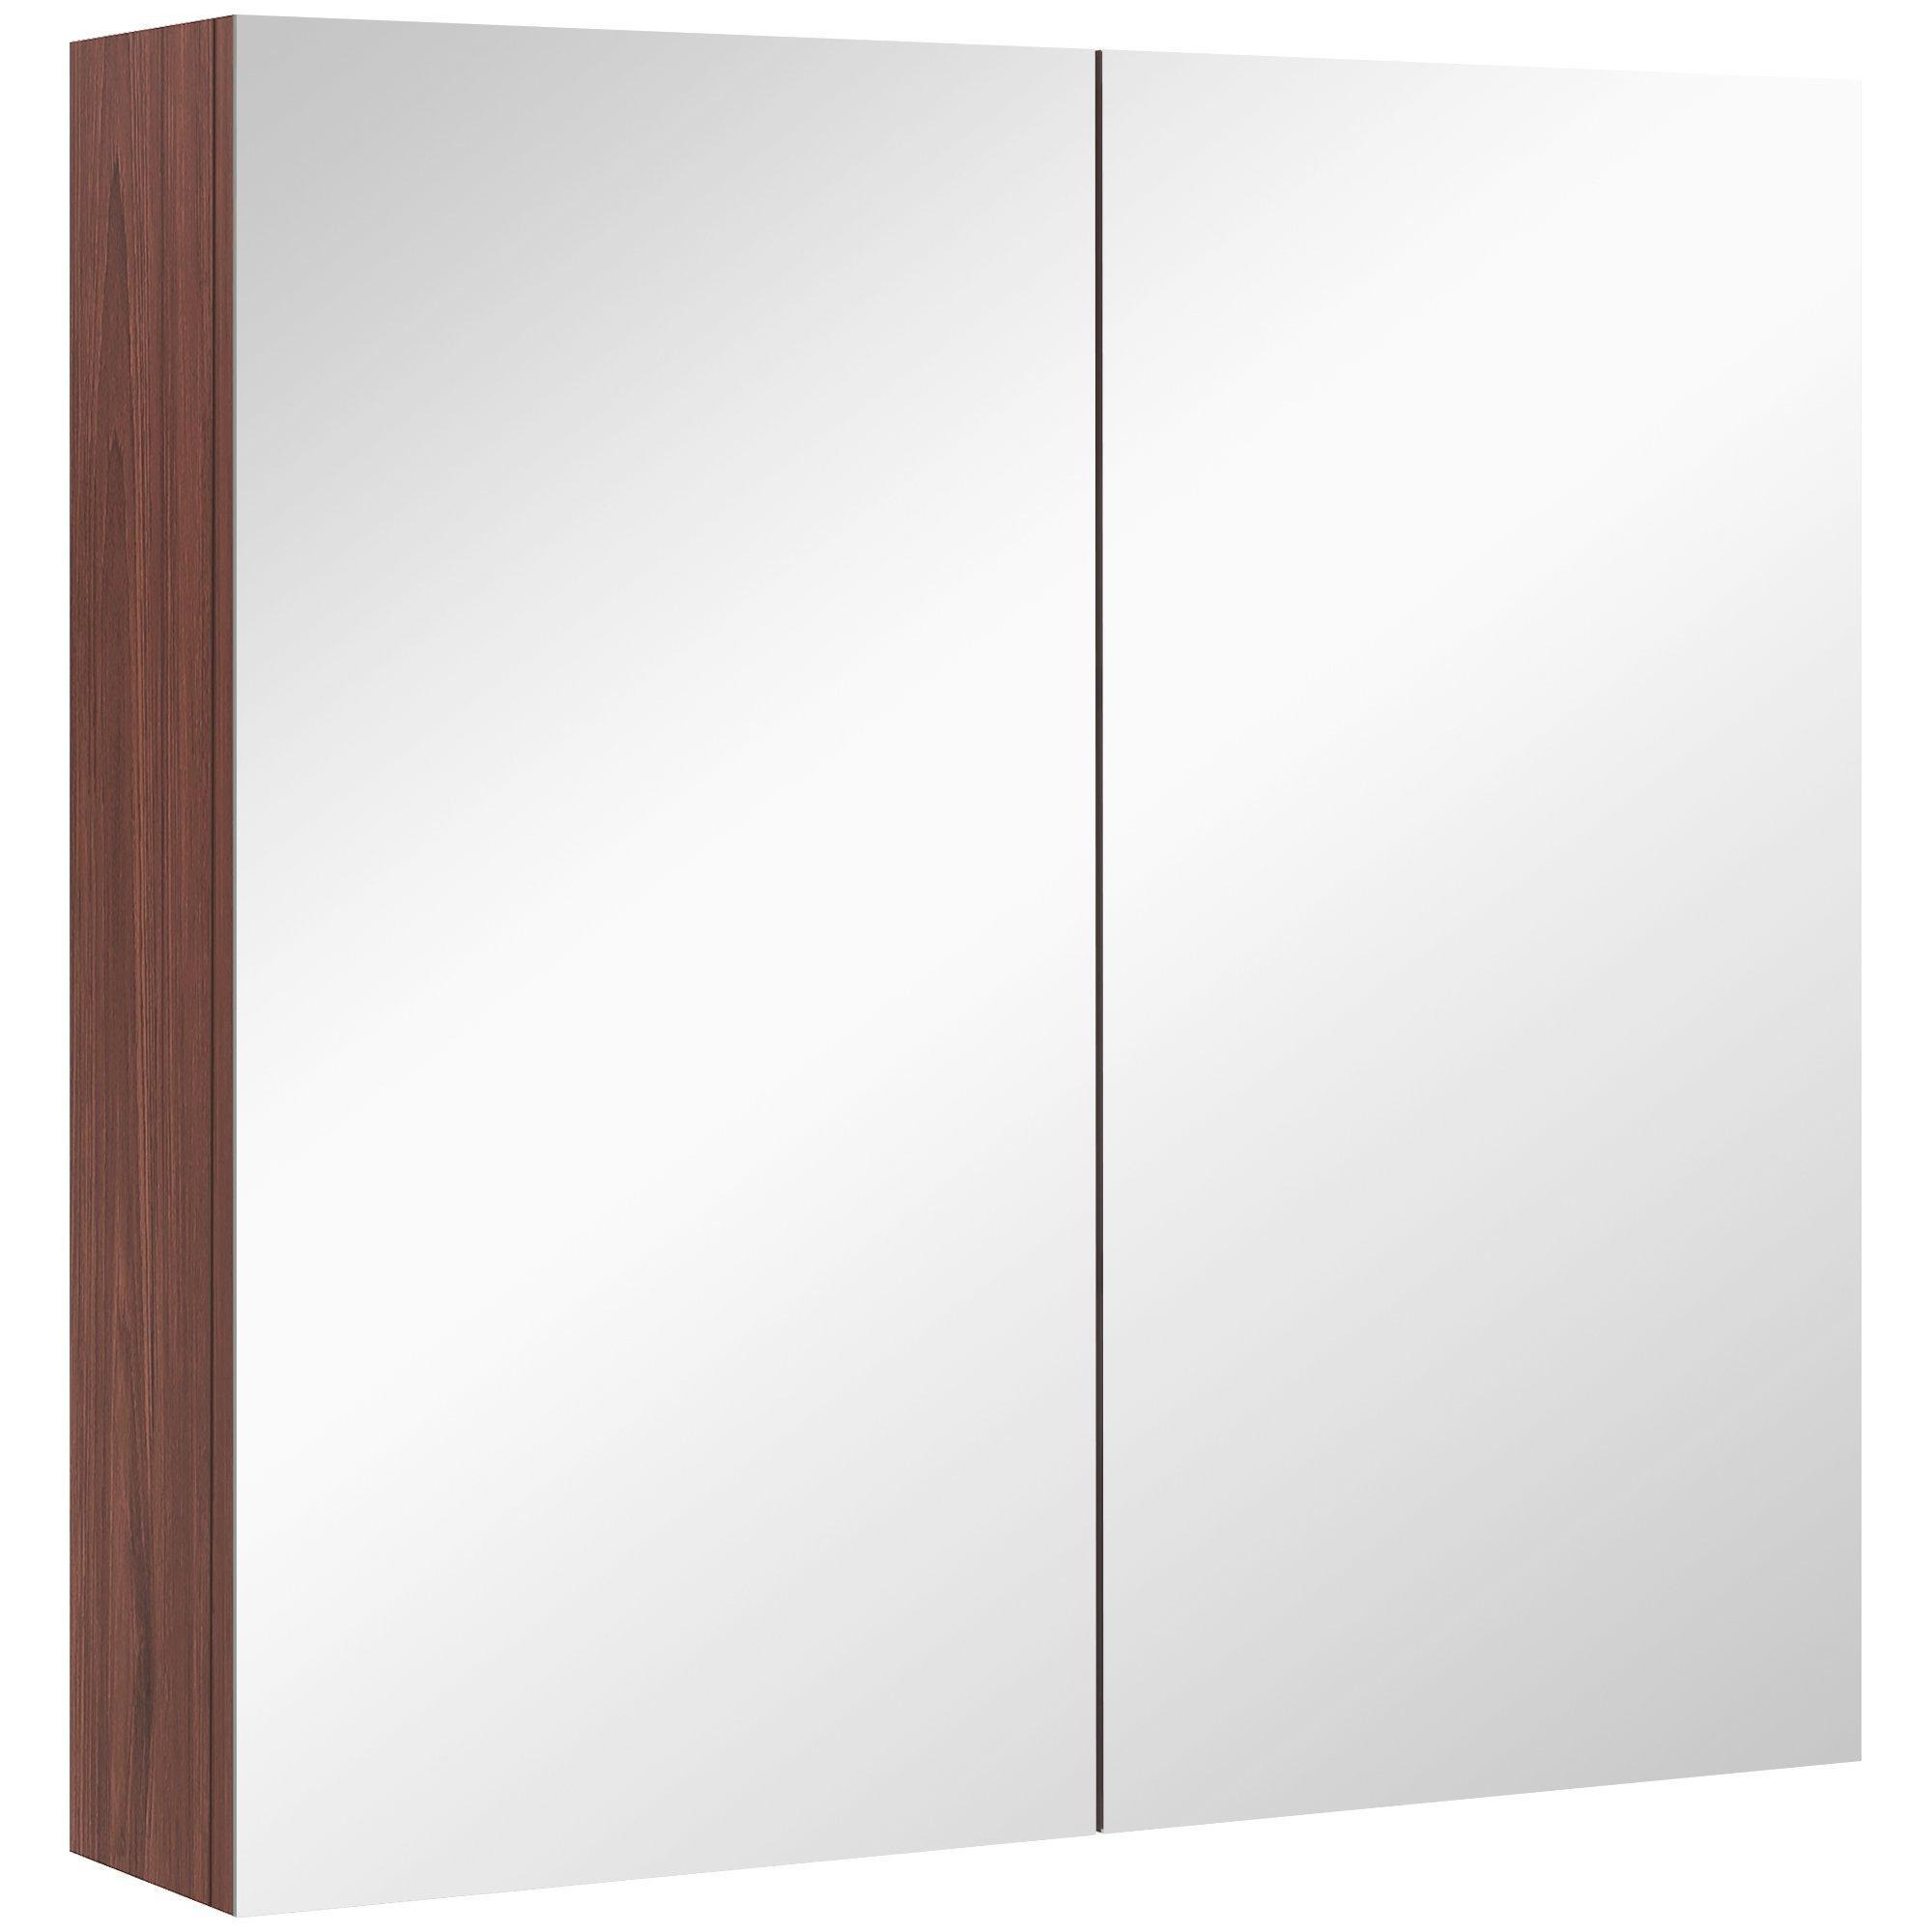 Double Door Bathroom Mirrored Cabinet Wall Mount Medicine Storage - image 1